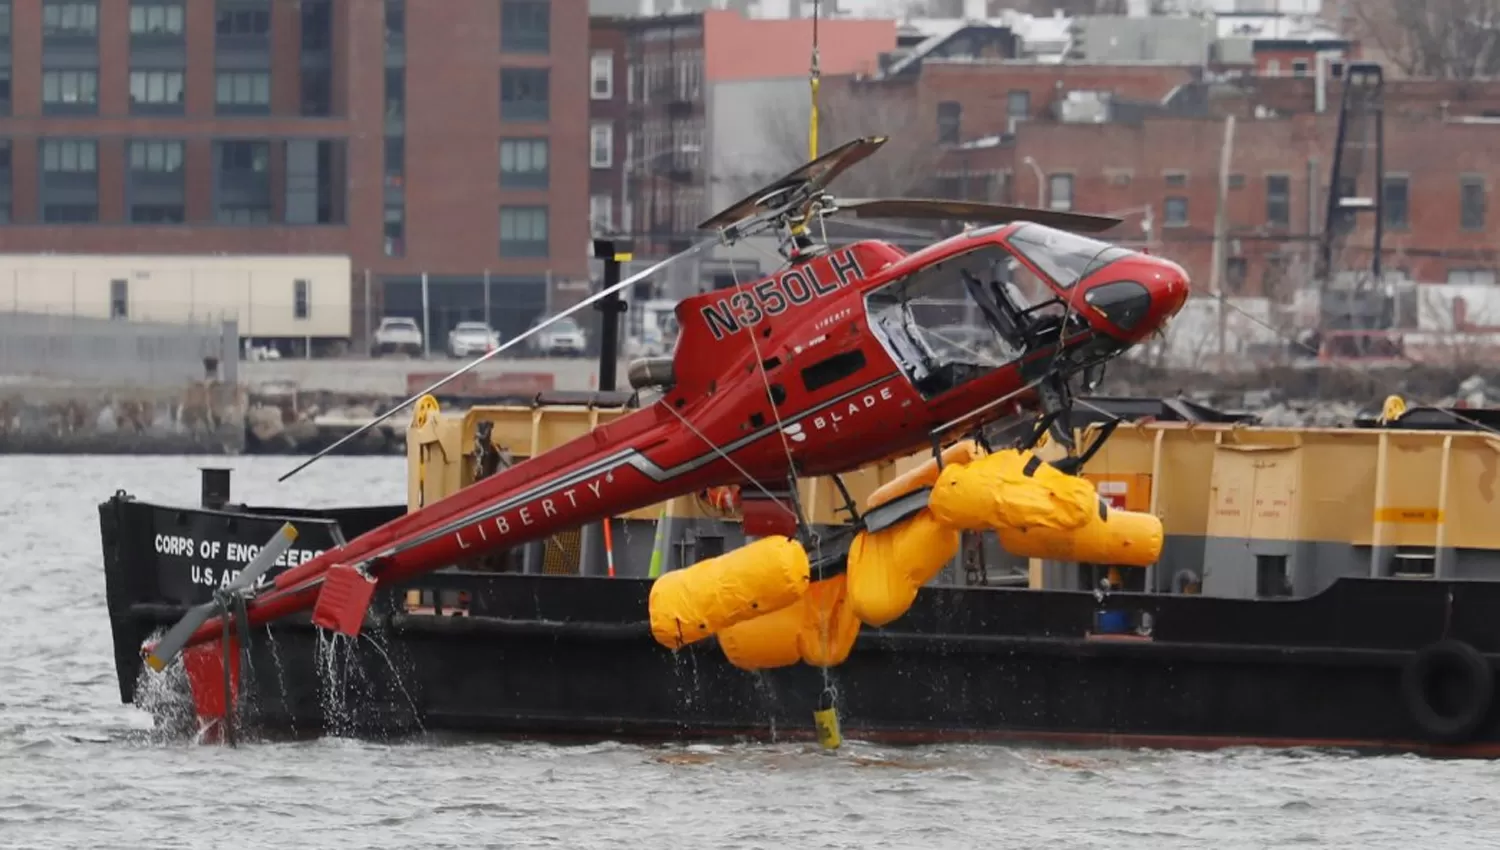 LOS RESTOS. El helicóptero de la tragedia. FOTO DE REUTERS